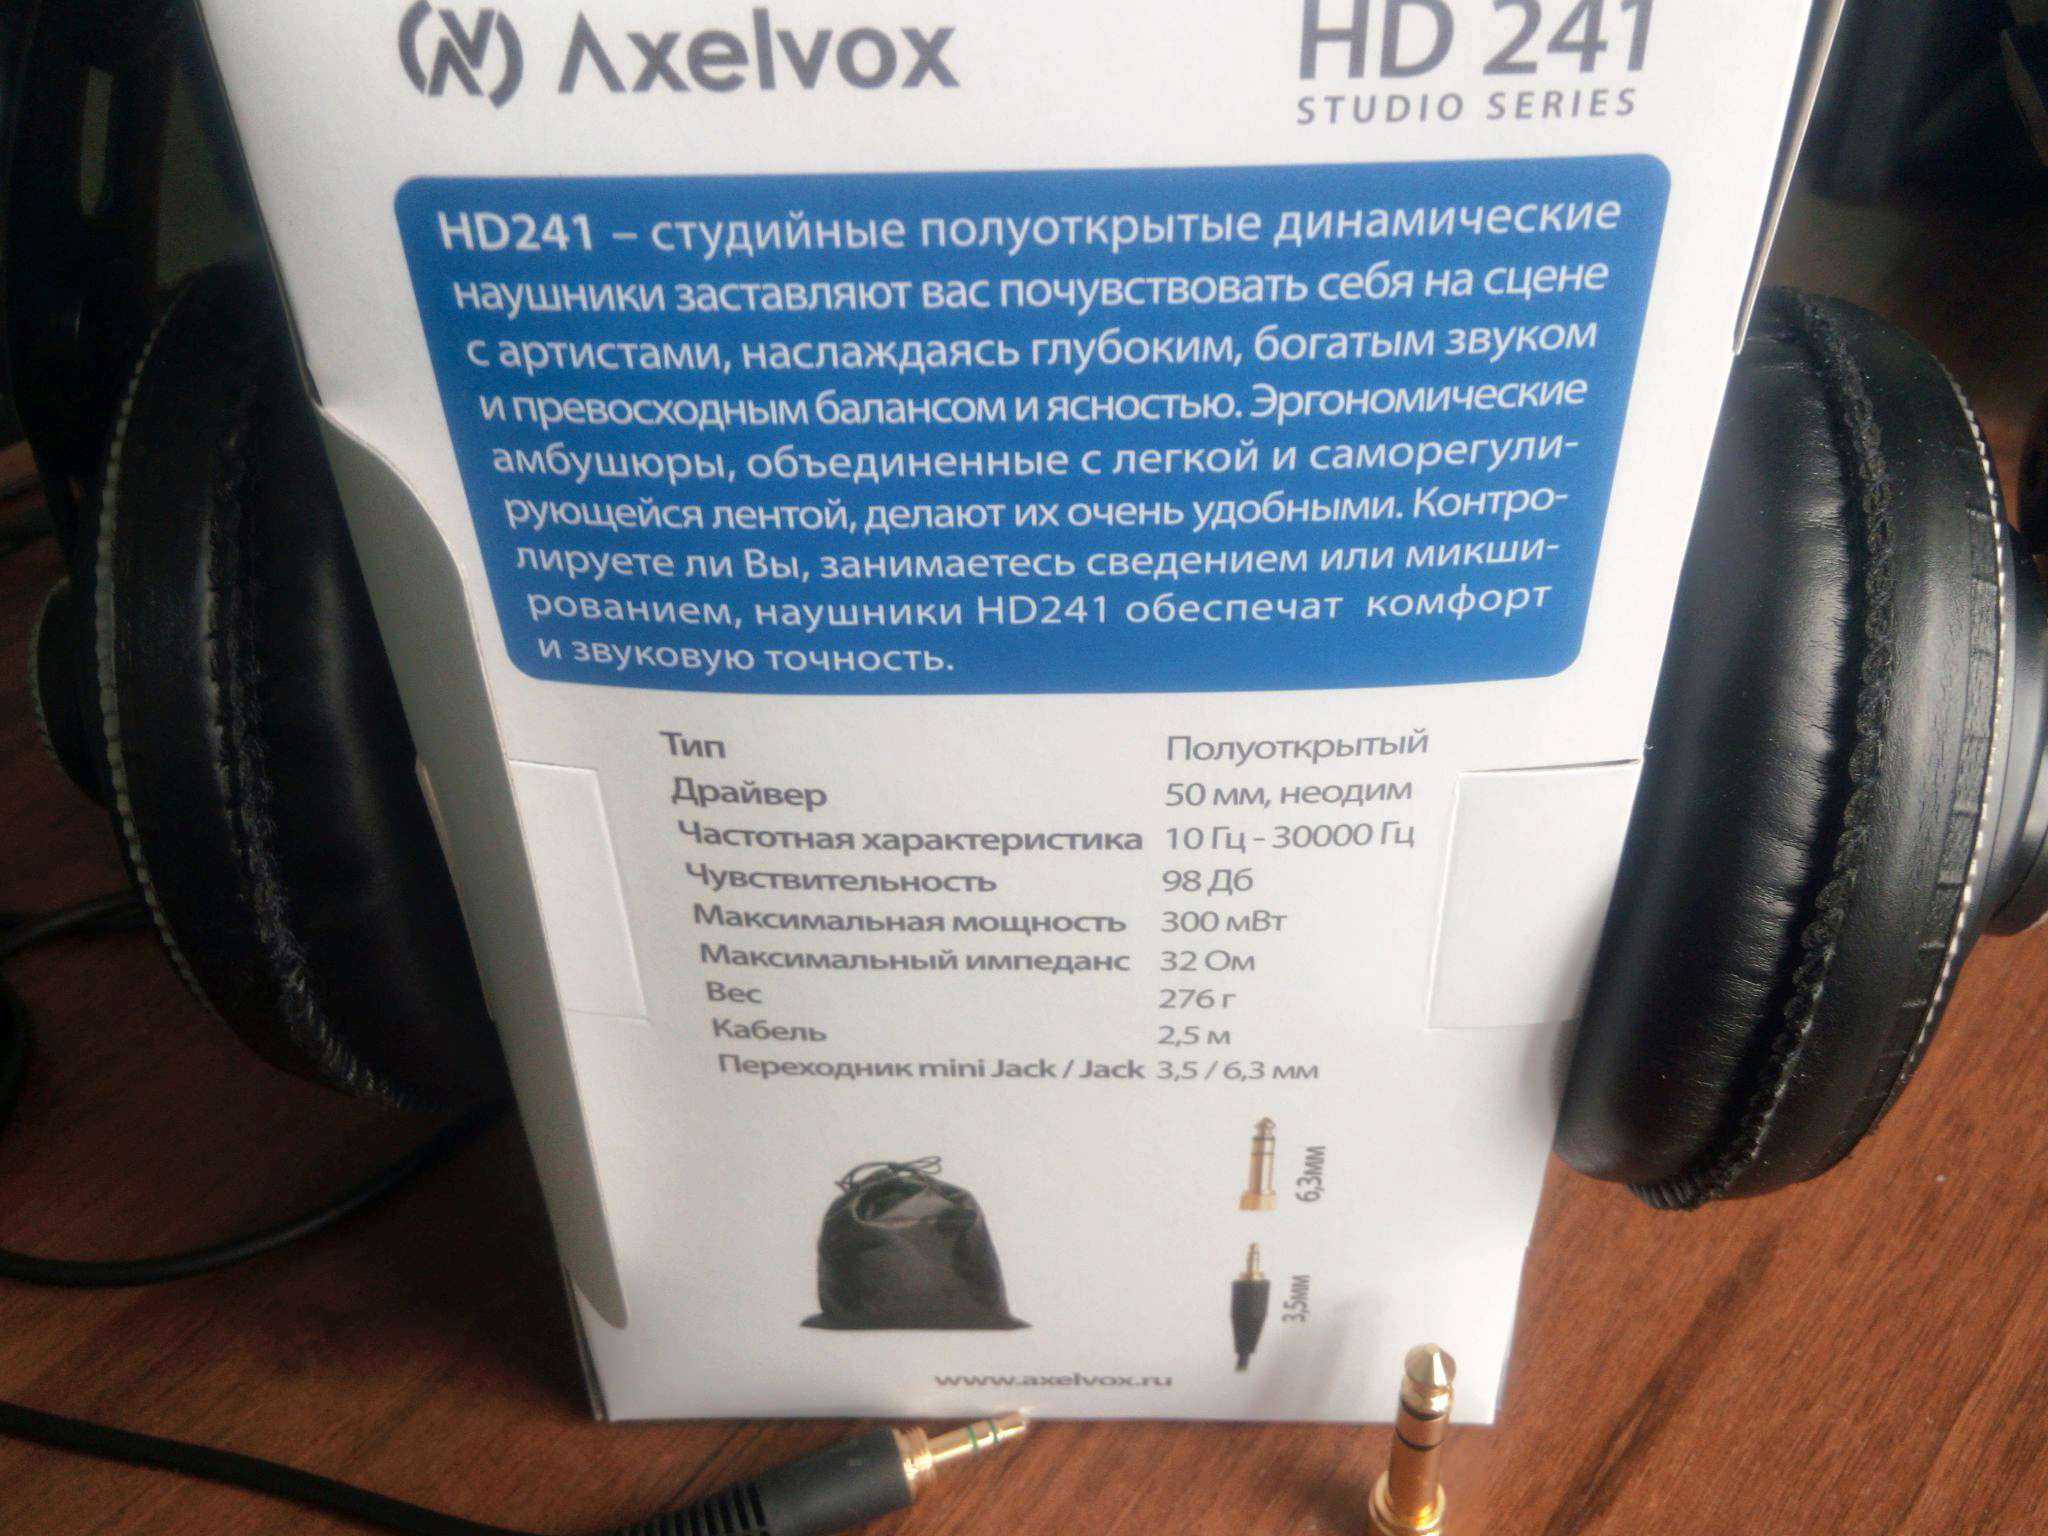 Наушник Axelvox HD241 - подробные характеристики обзоры видео фото Цены в интернет-магазинах где можно купить наушника Axelvox HD241